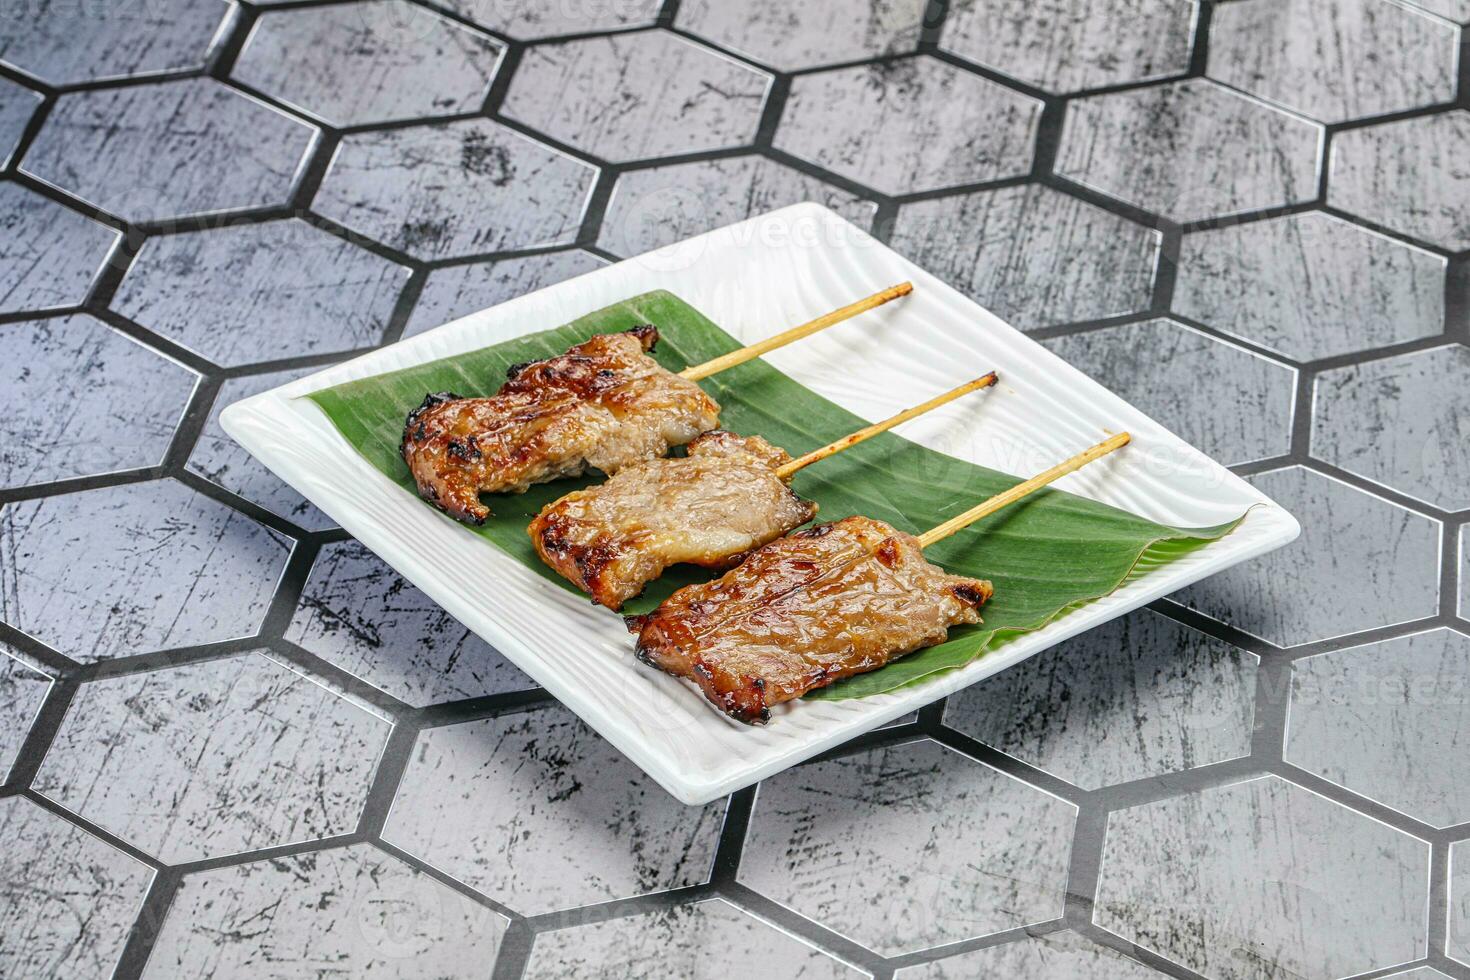 thaïlandais cuisine - grillé porc brochette photo